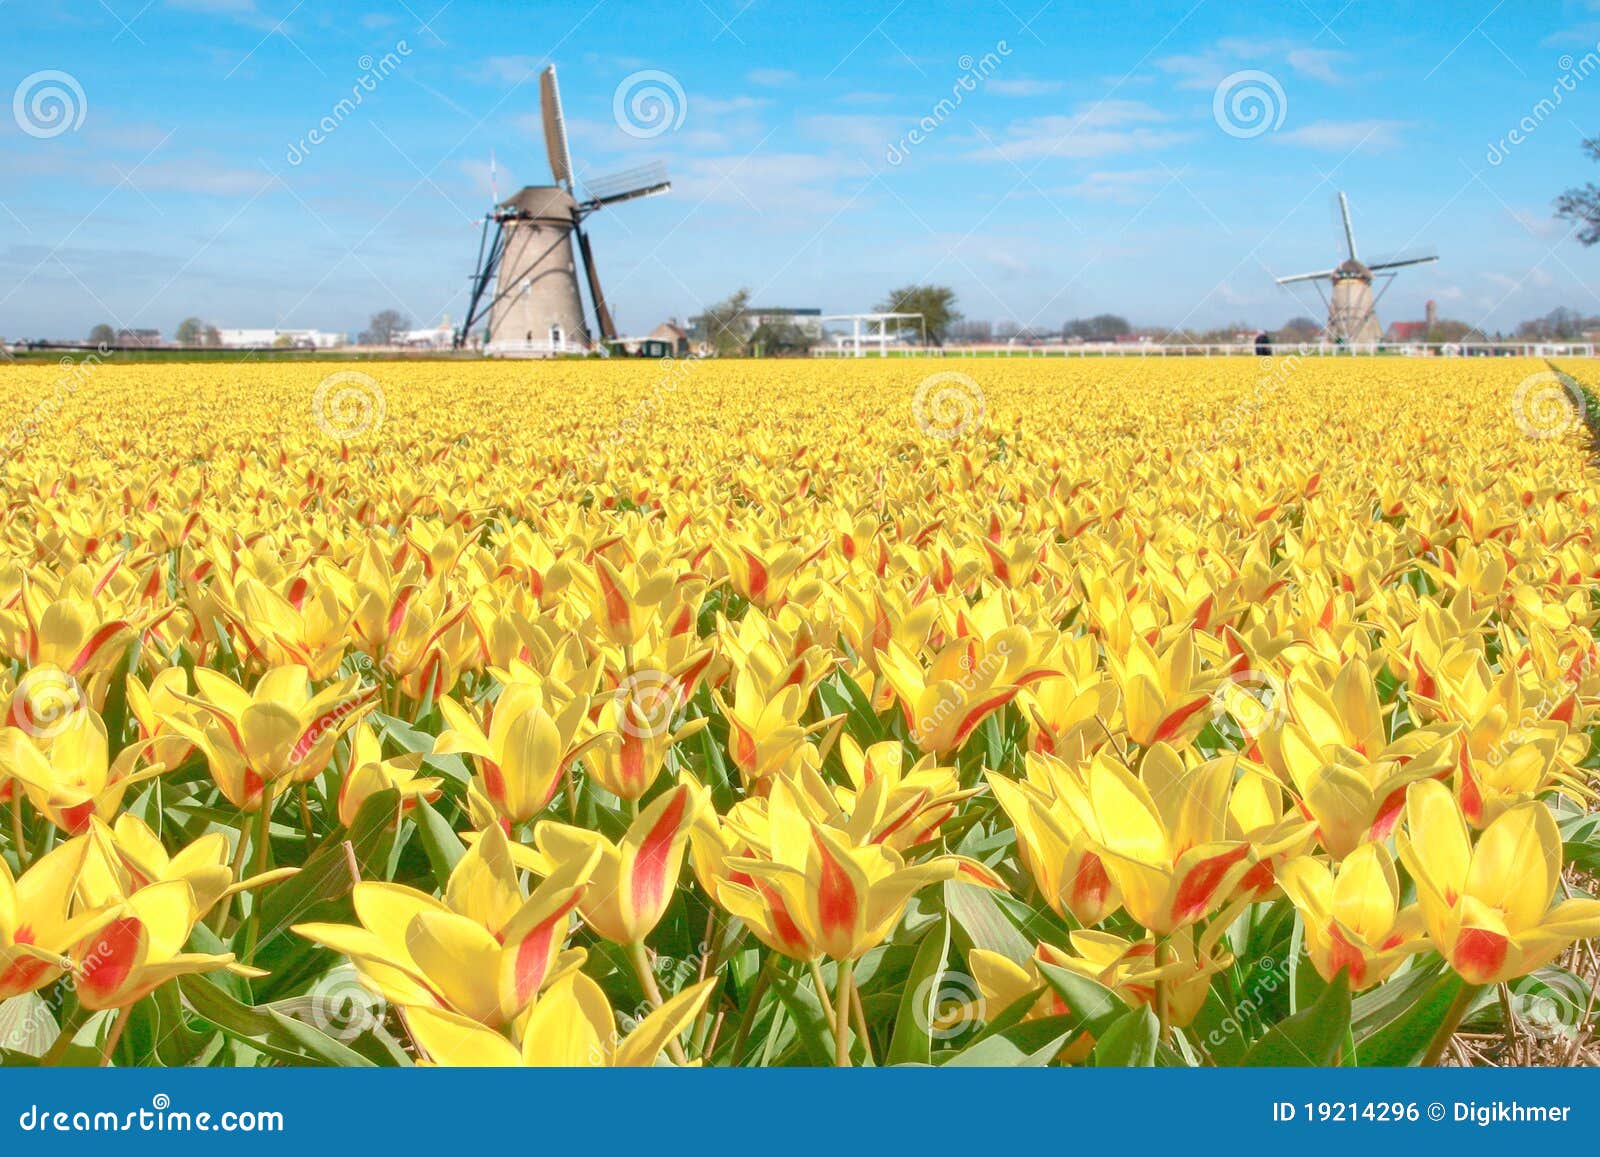 تنويع  - صفحة 14 Dutch-tulip-windmill-landscape-19214296